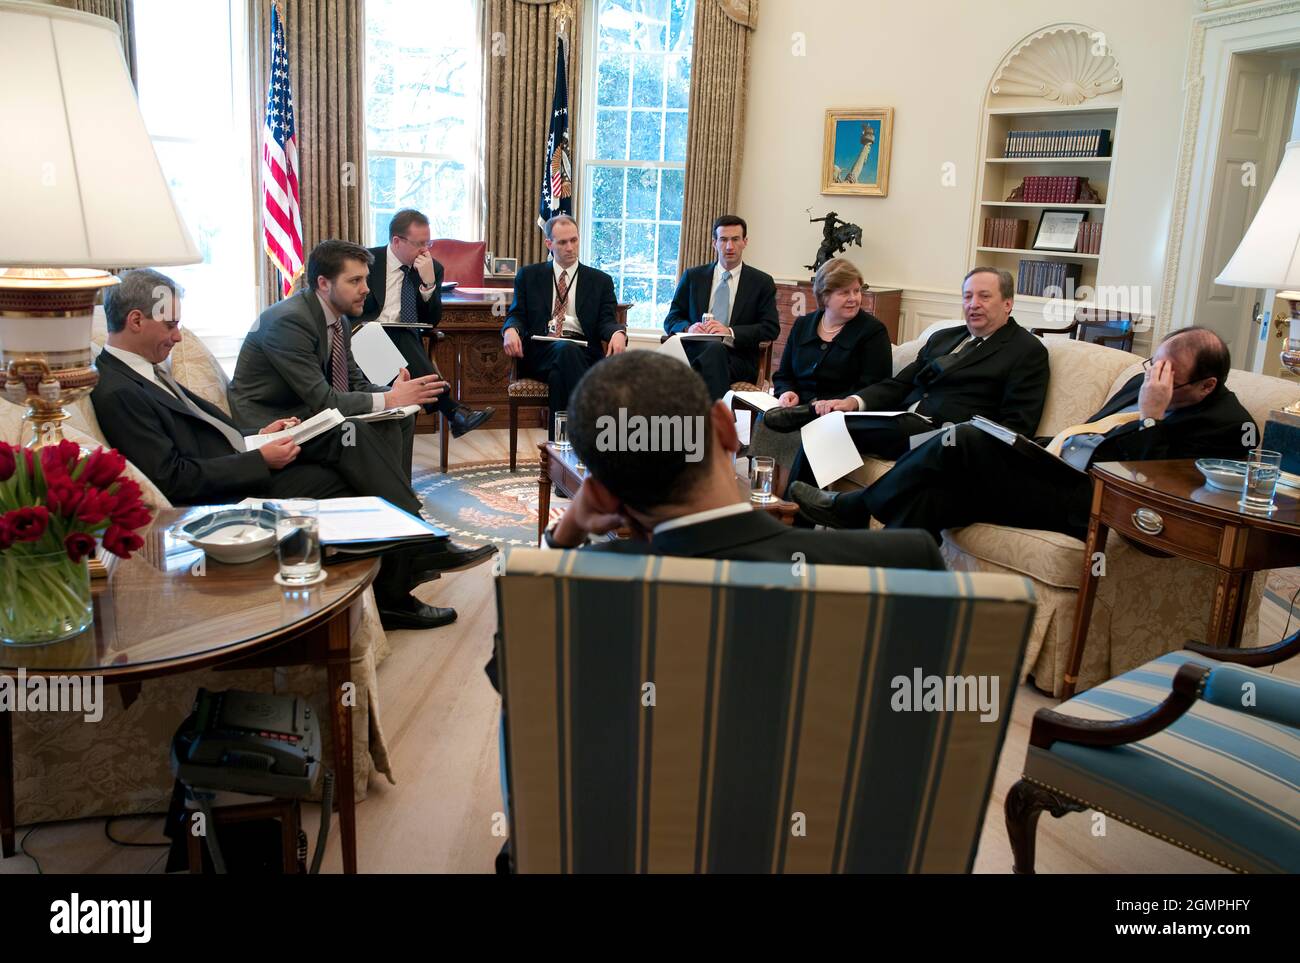 Le président Barack Obama lors d'un briefing quotidien économique dans le Bureau ovale. 3/5/09. Photo officielle de la Maison Blanche par Pete Souza Banque D'Images